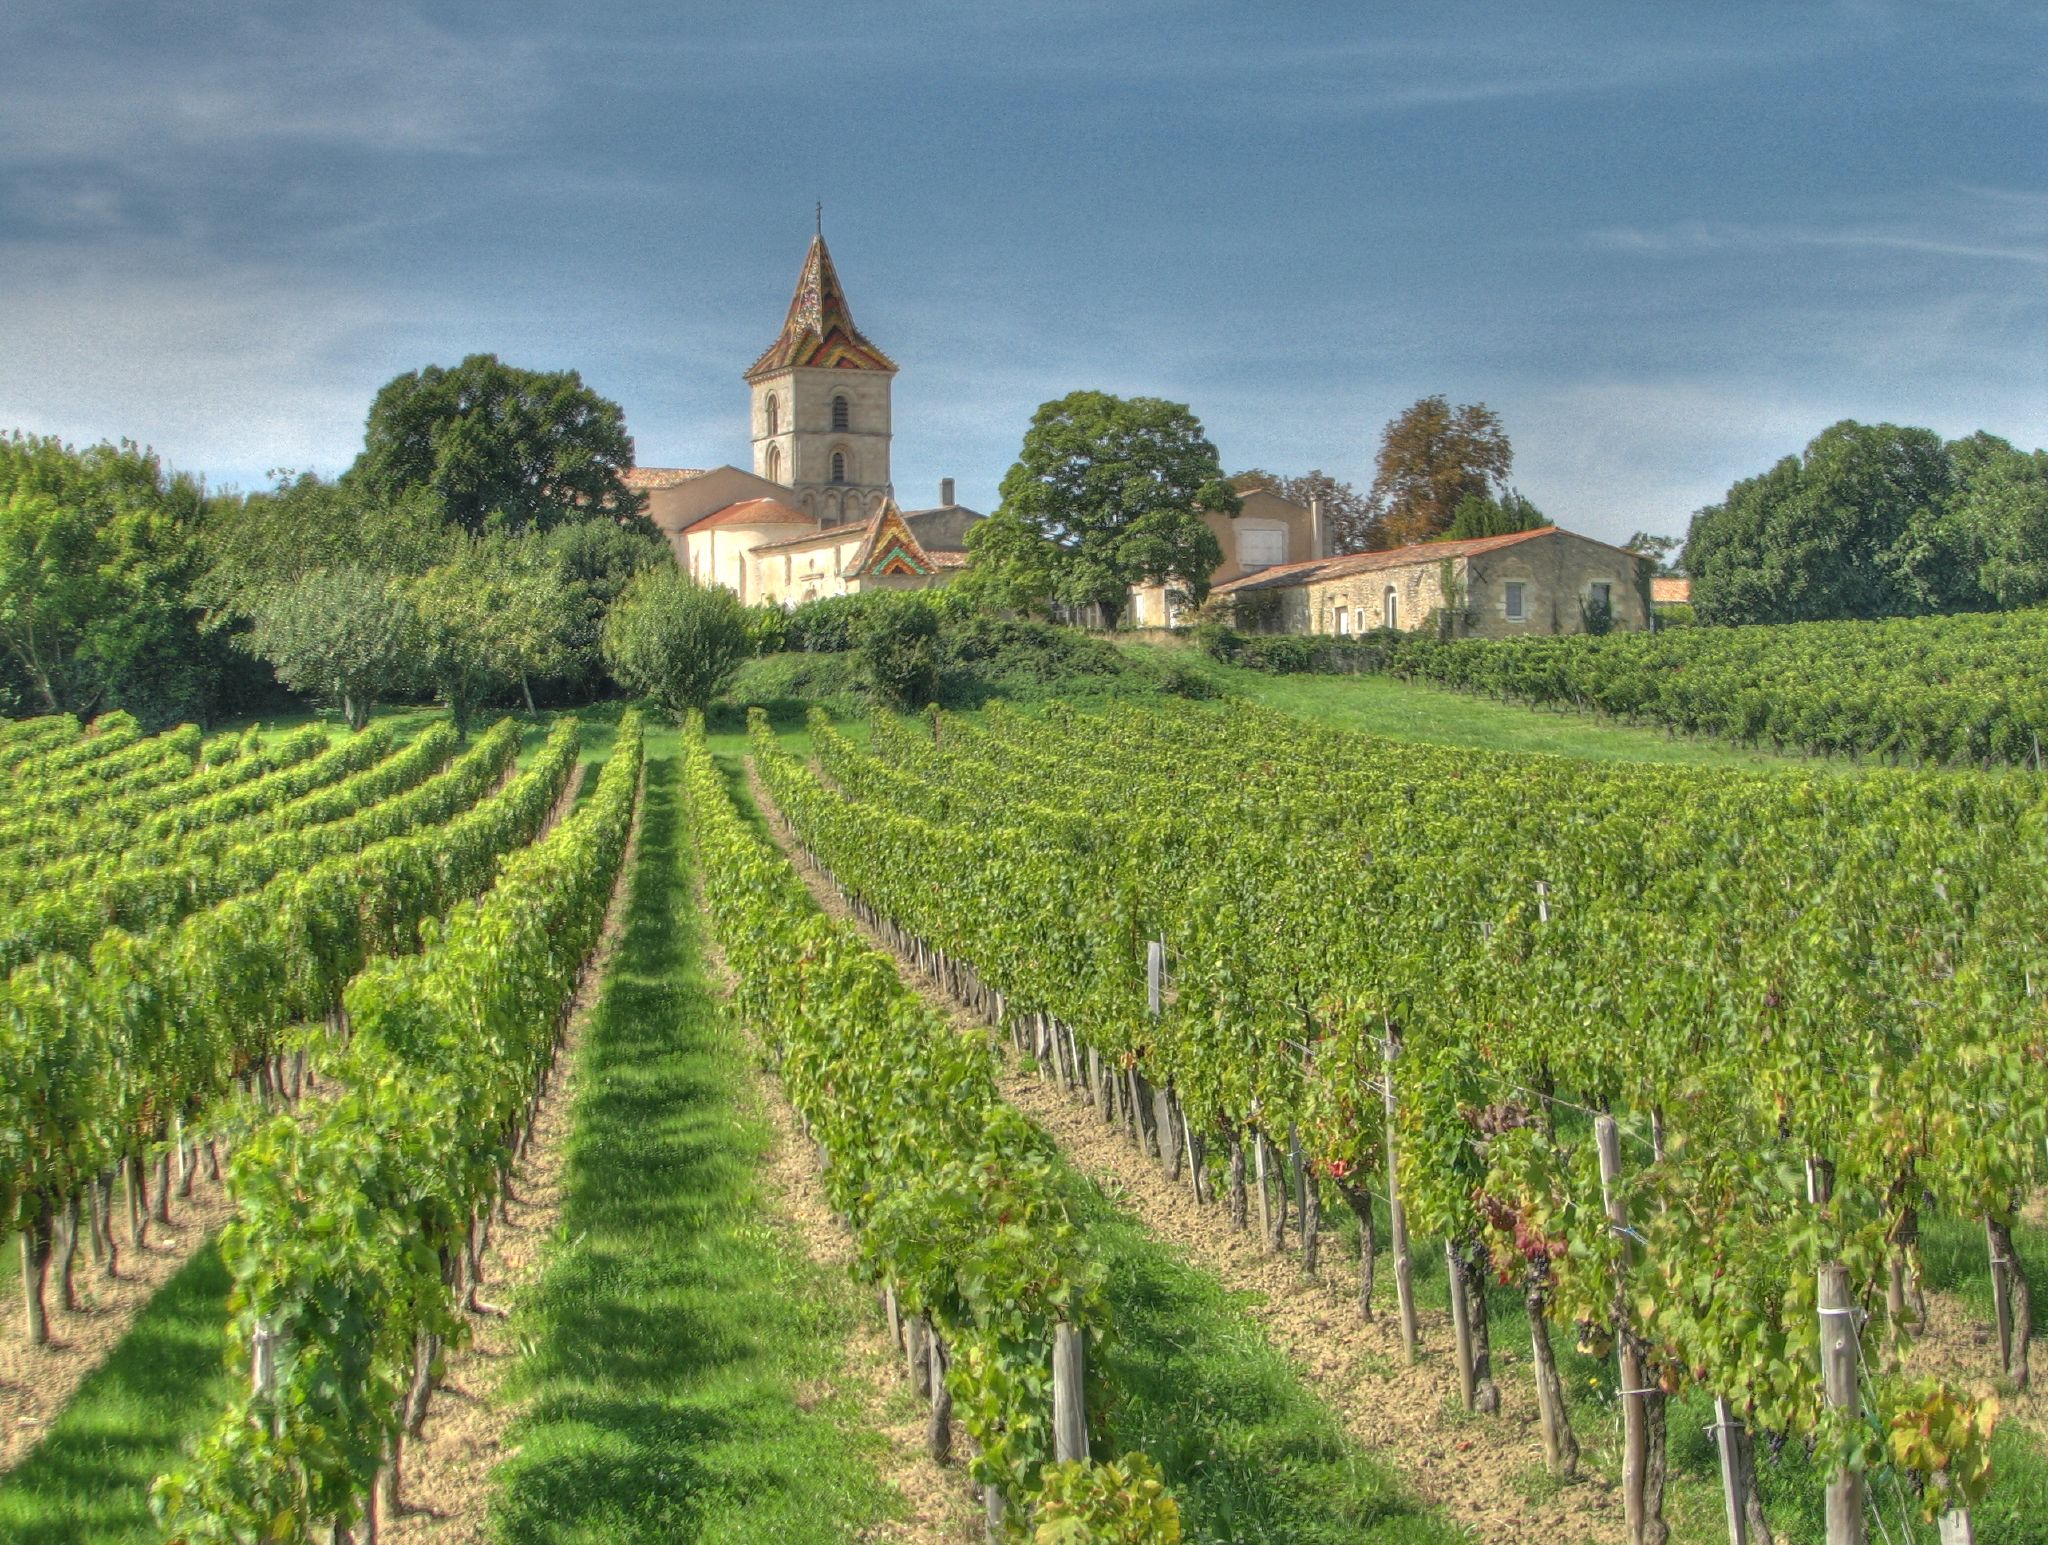 Reģions, kurā vīns tiek ražots, ir svarīgs faktors, lai noteiktu labākos vīnus, kuros investēt 2022. un 2023. gadā.